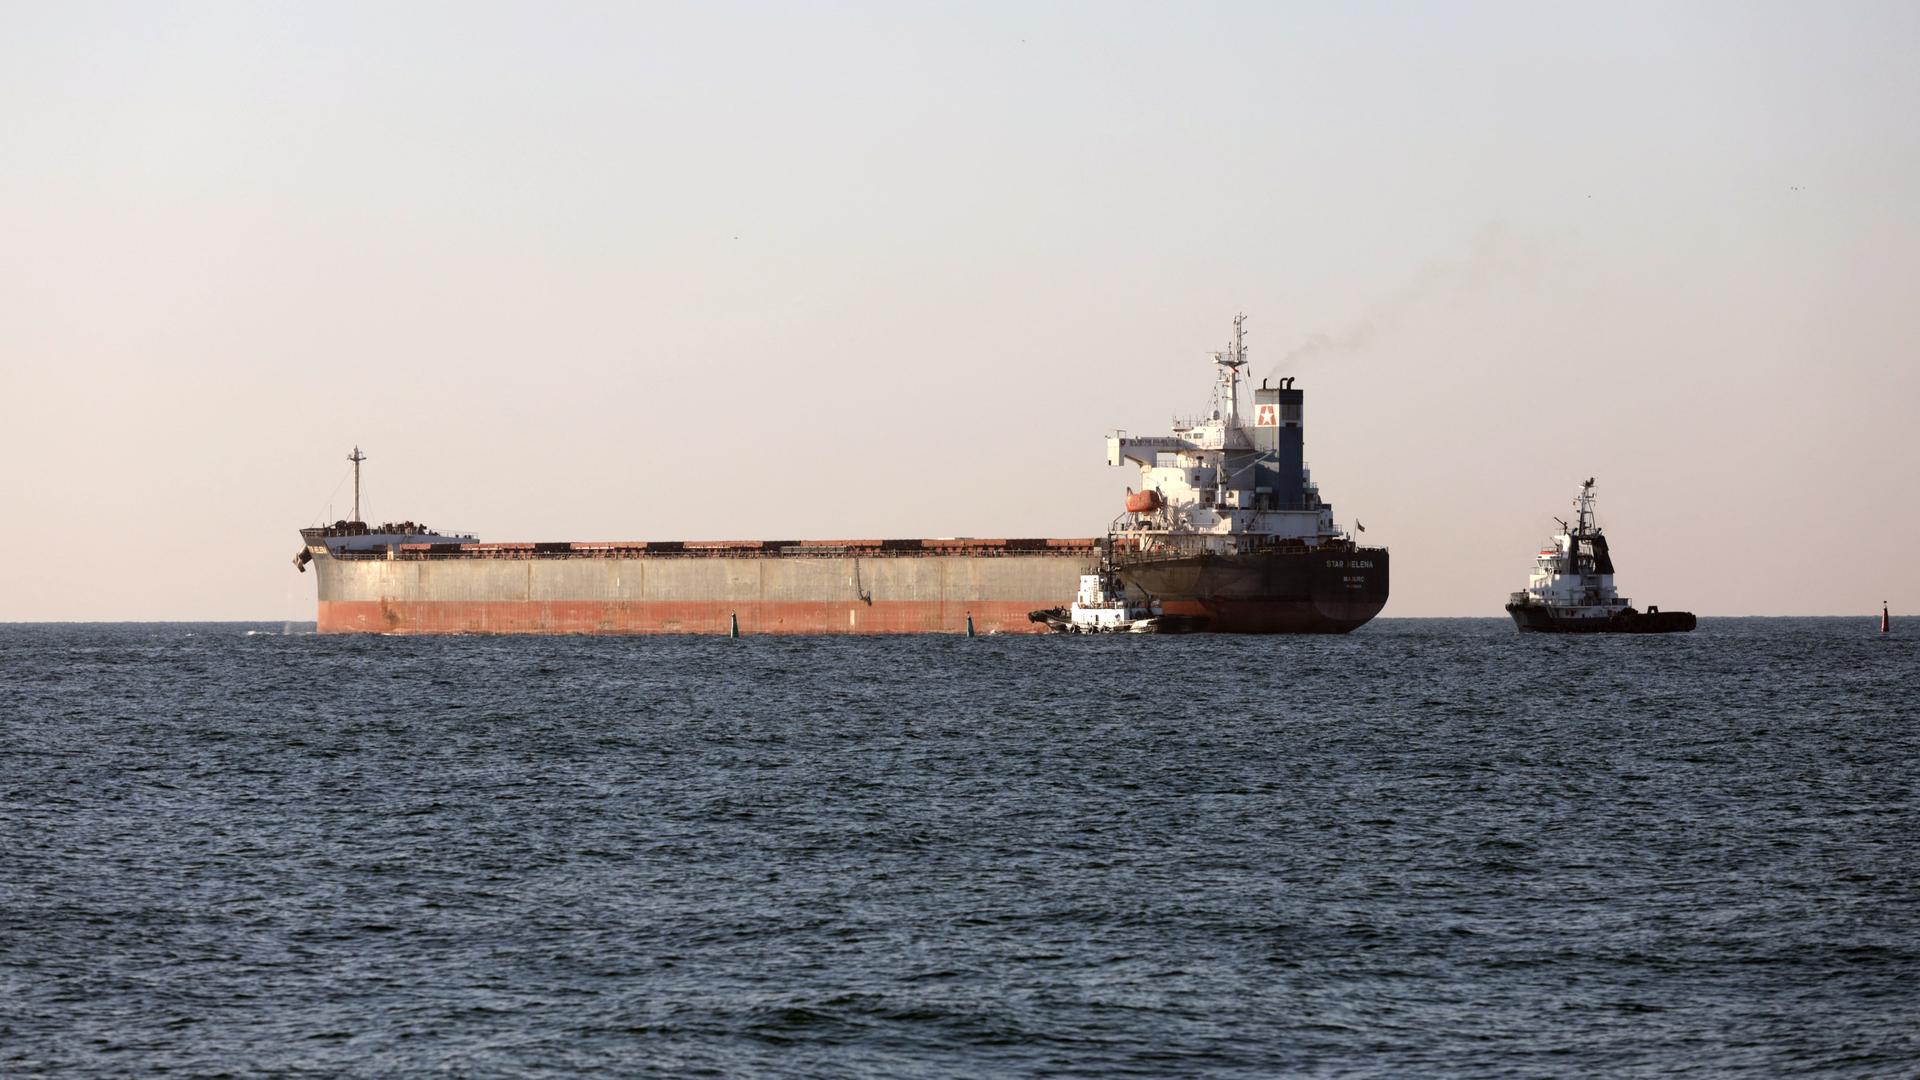 Das Foto zeigt den Frachter "Star Helena", der unter der Flagge der Marshall Inseln fährt und den ukrainischen Hafen von Tschornomorsk verlässt.